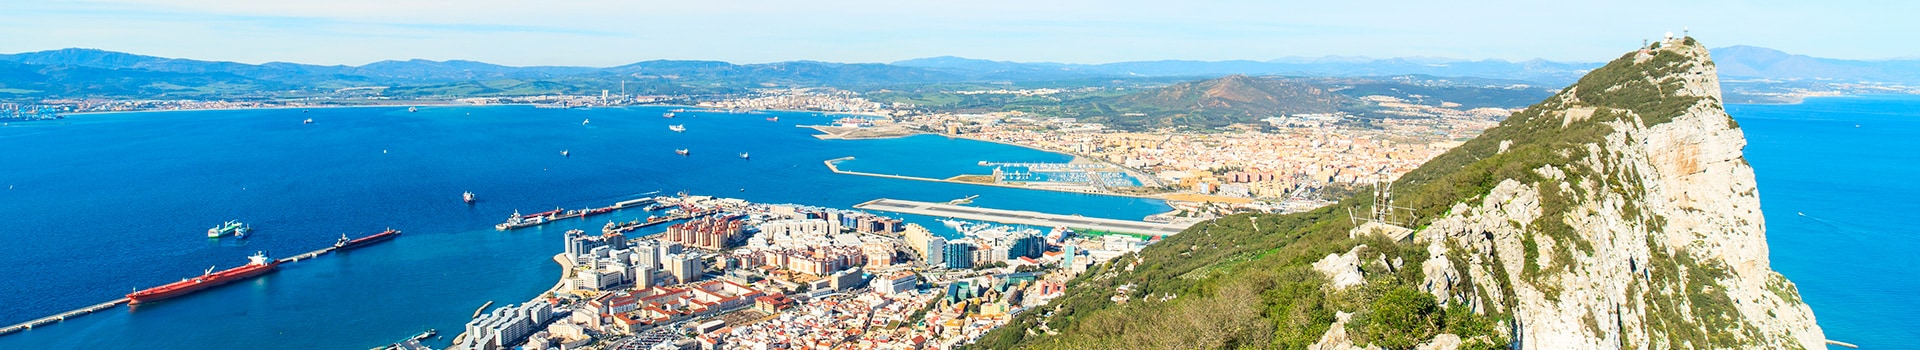 Madrid - Gibraltar